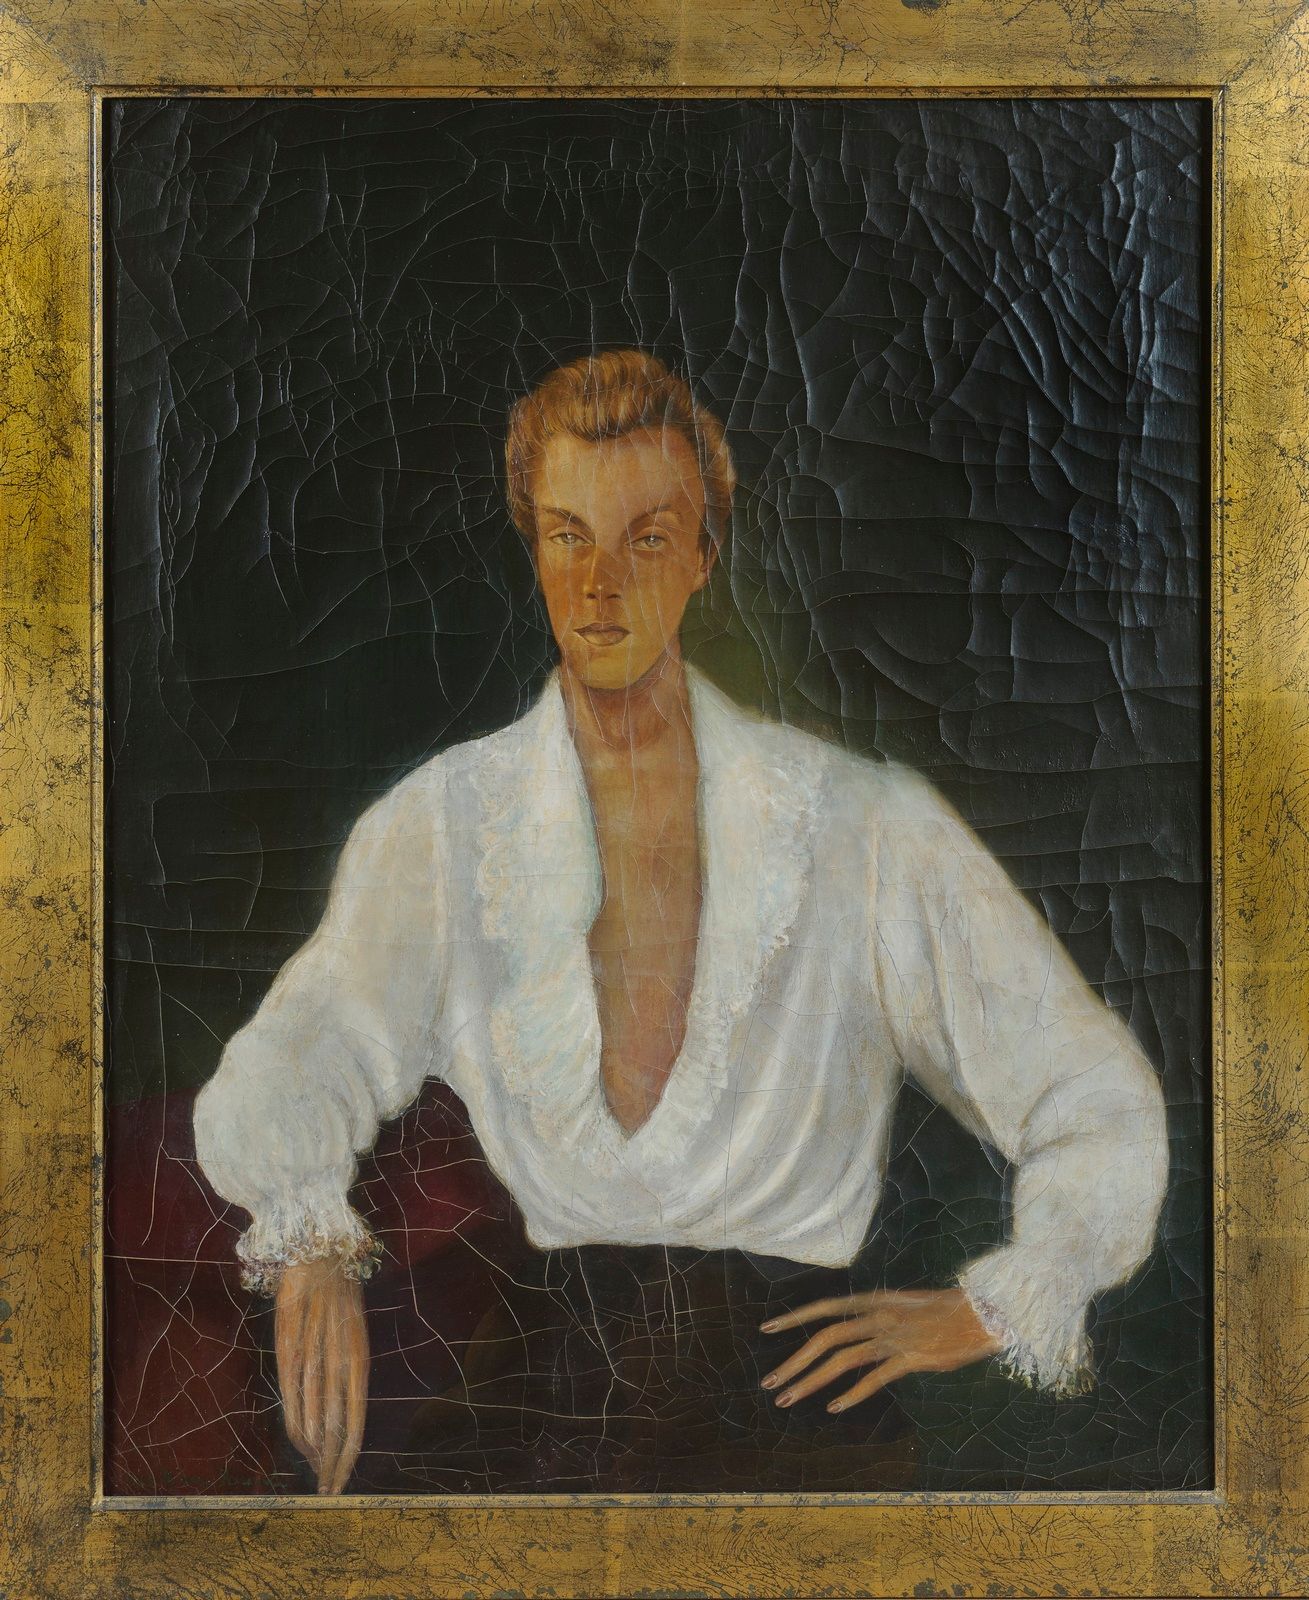 Null Escuela Moderna

Retrato de Jacques FATH

Lienzo

Alrededor de 1940